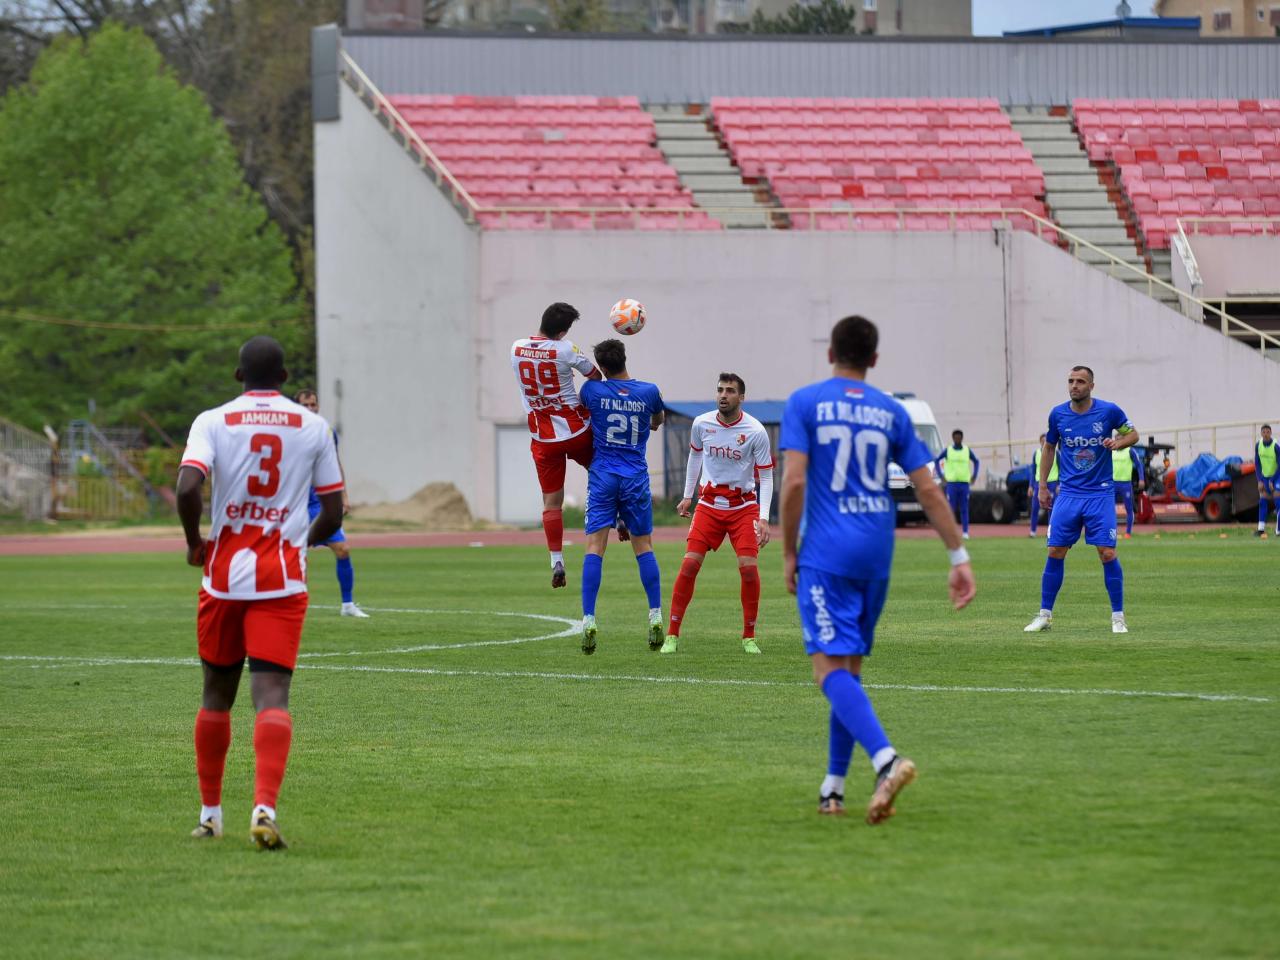 FK Radnički Niš - Javor - Radnički 1:0